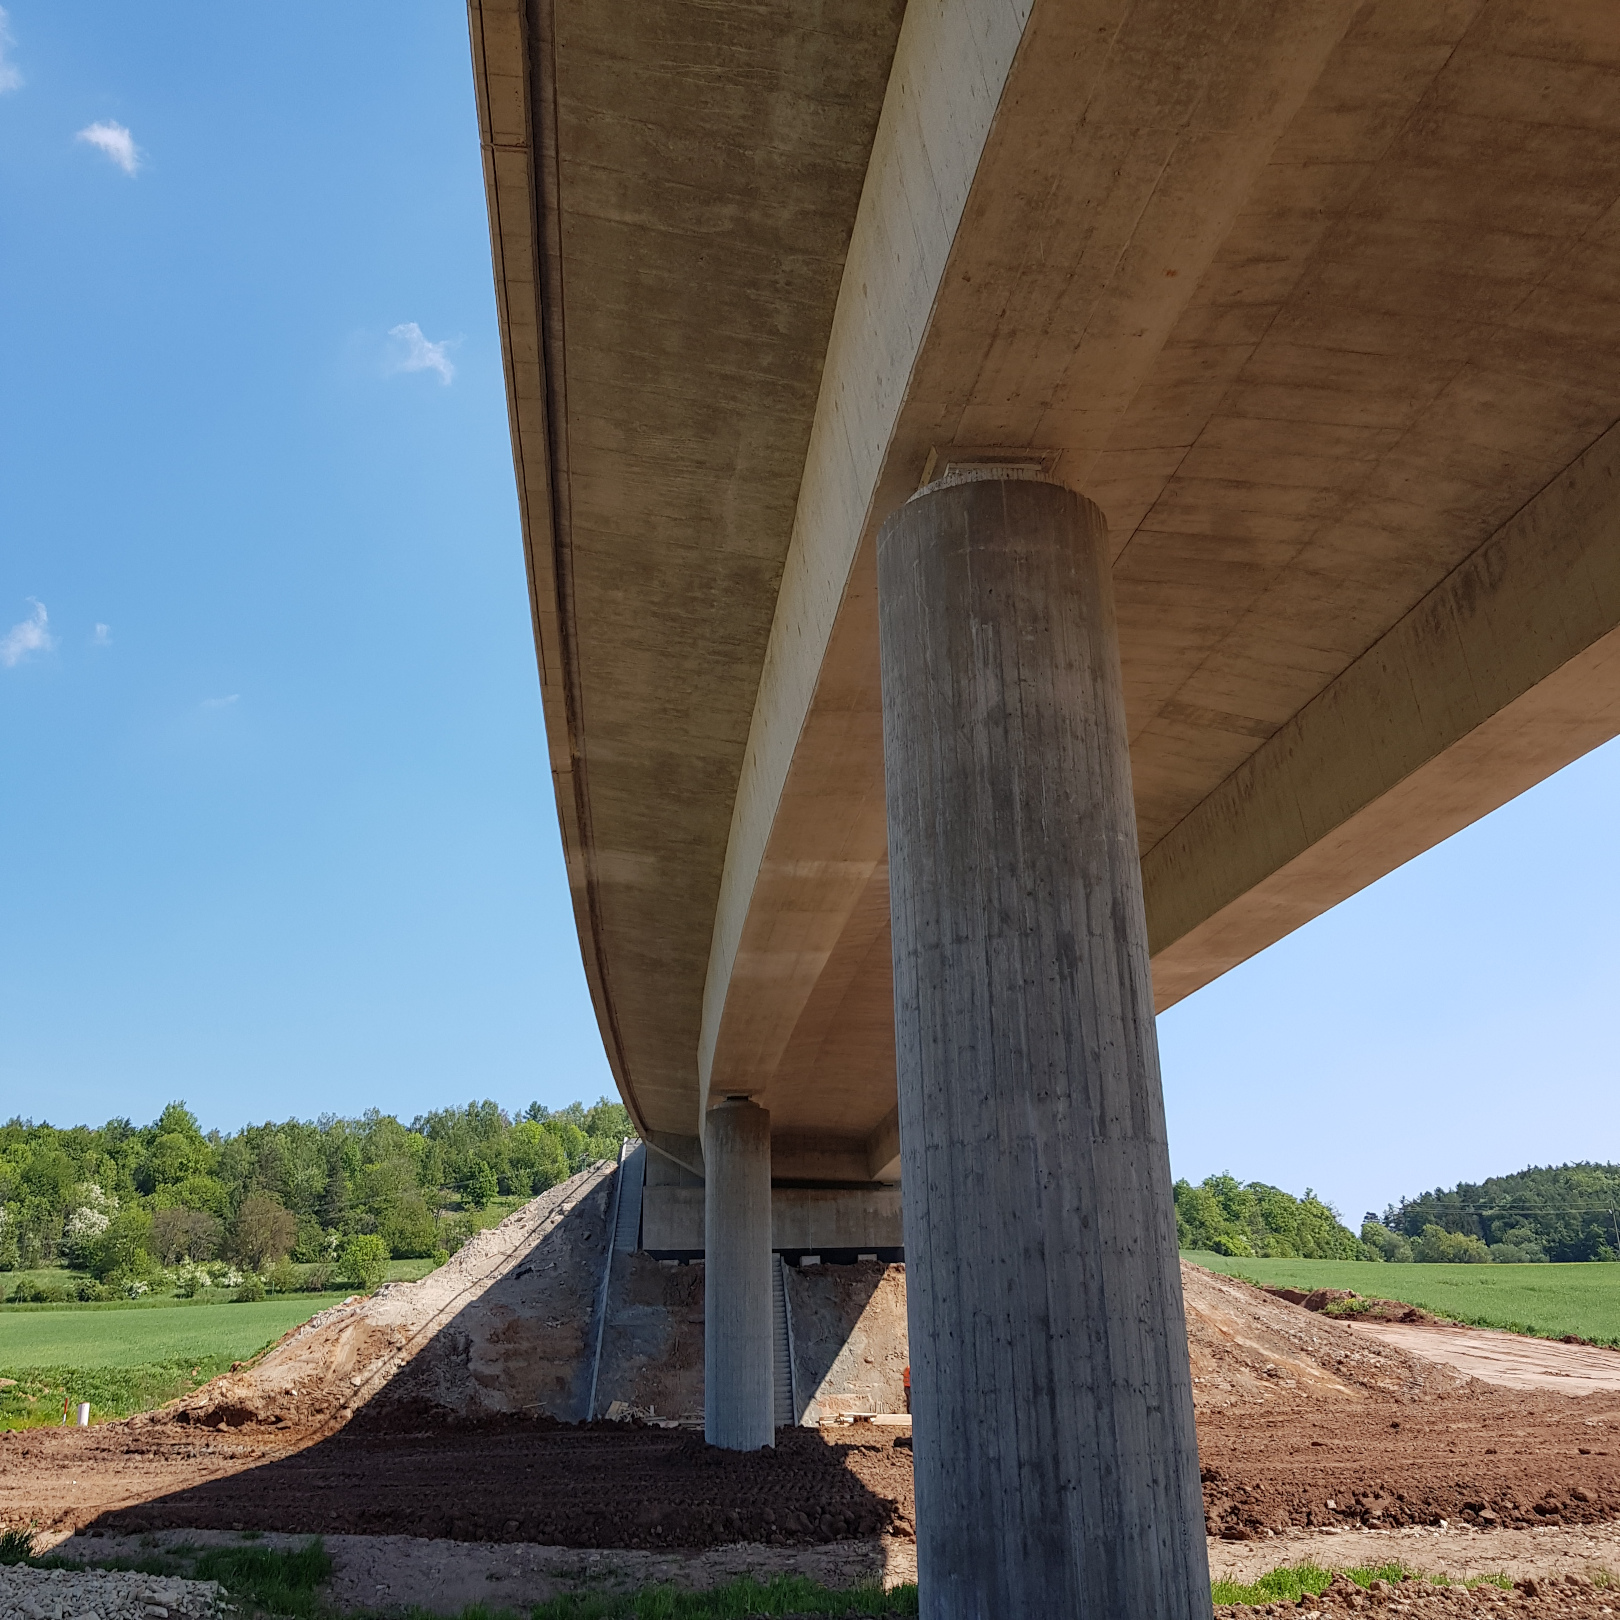 Dálnice D6, obchvat Řevničova – stavba mostu na přeložce silnice - Straßen- und Brückenbau